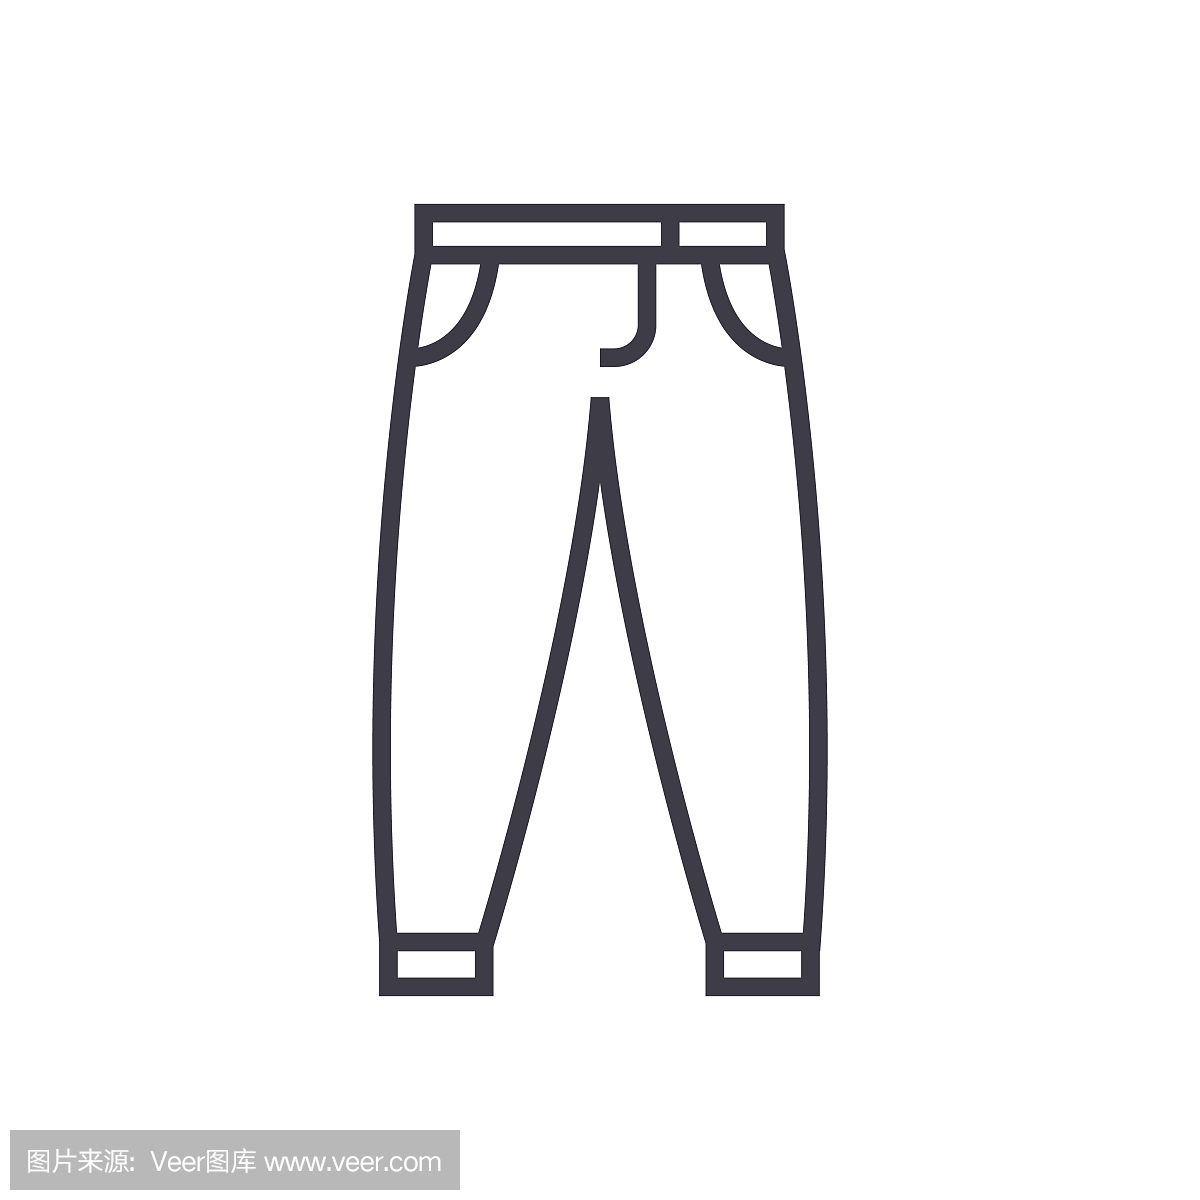 男装牛仔裤设计手稿图-男士牛仔裤款式效果图-CFW服装设计